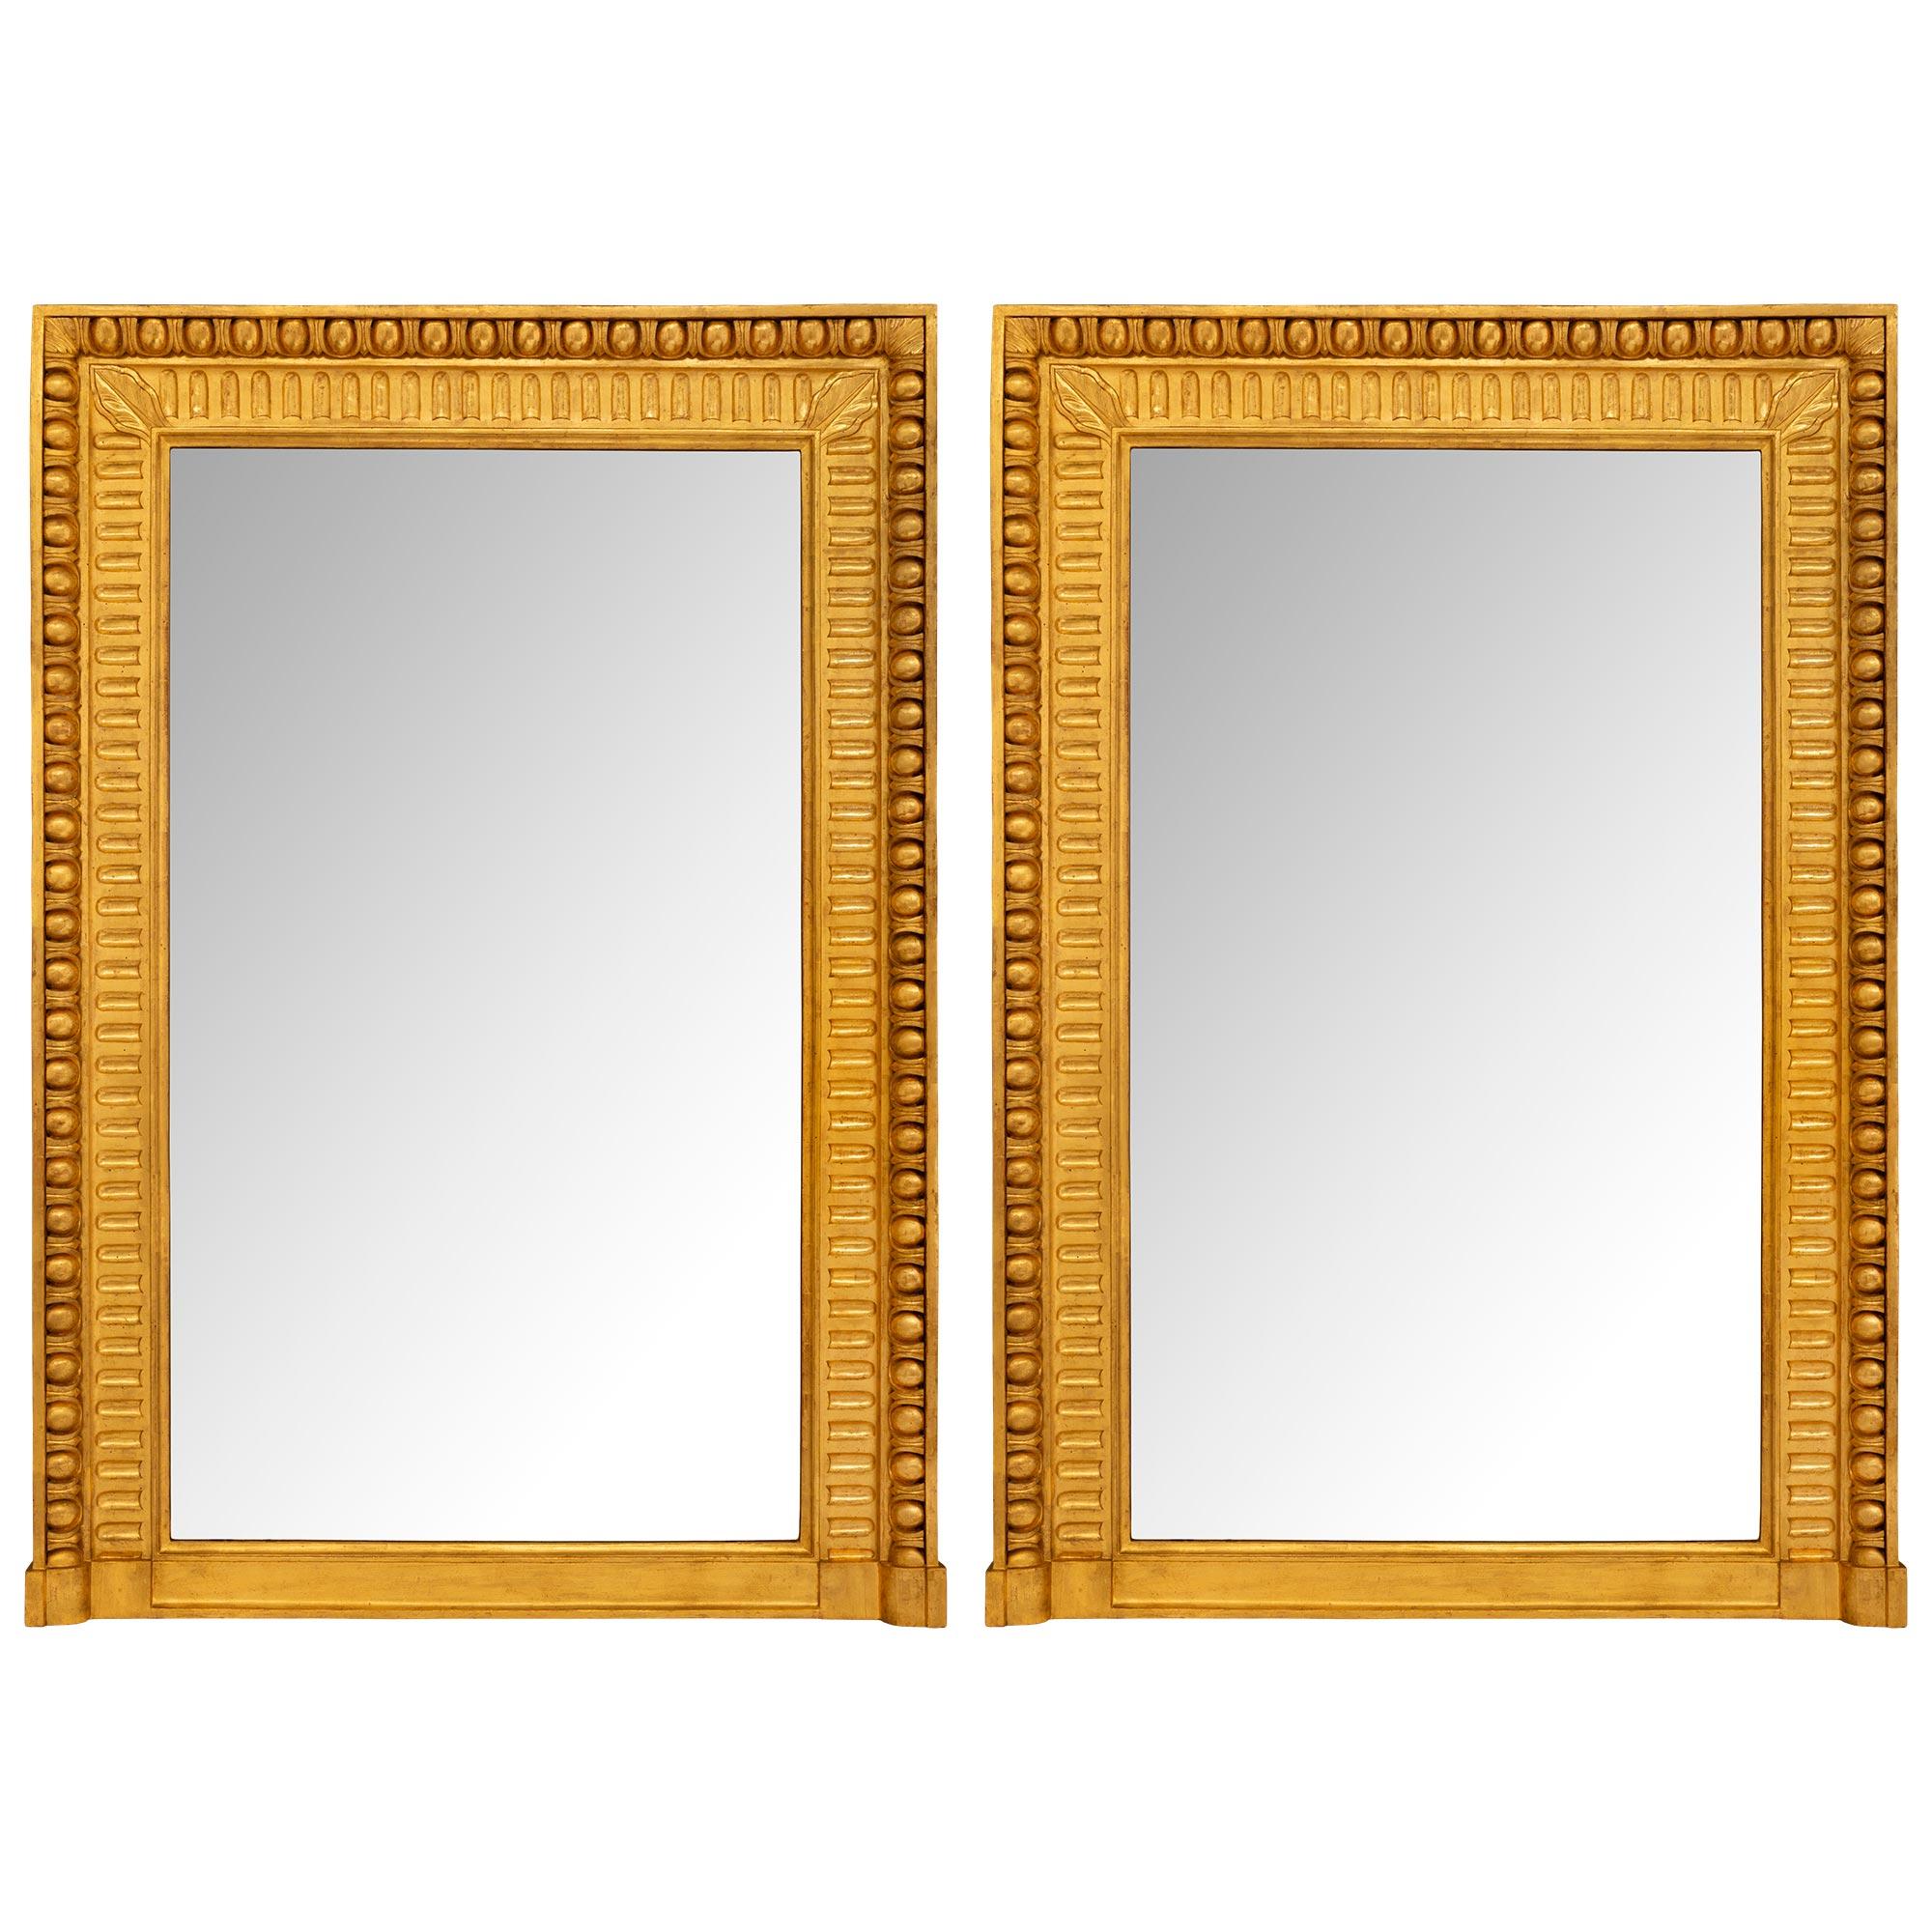 Paire de miroirs rectangulaires en bois doré du 19ème siècle de style Louis XVI italien